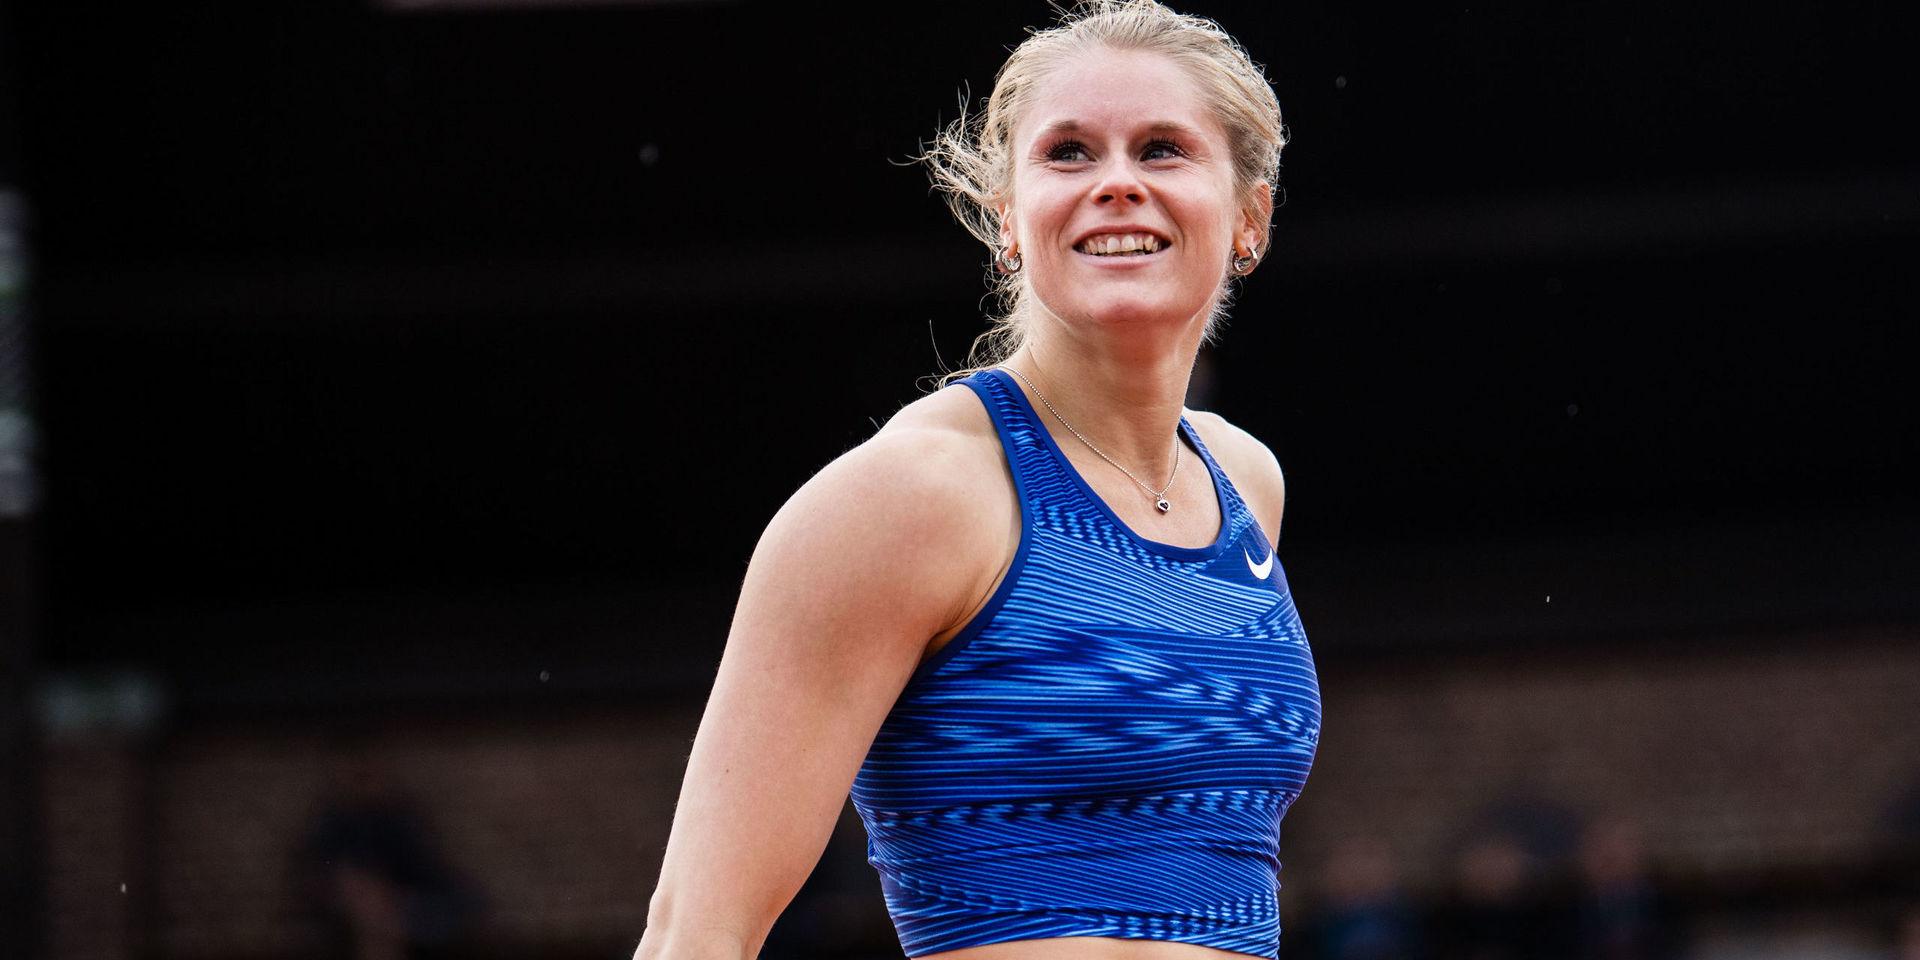 Michaela Meijer vann stavhoppet i Världsungdomsspelen på 4,70.